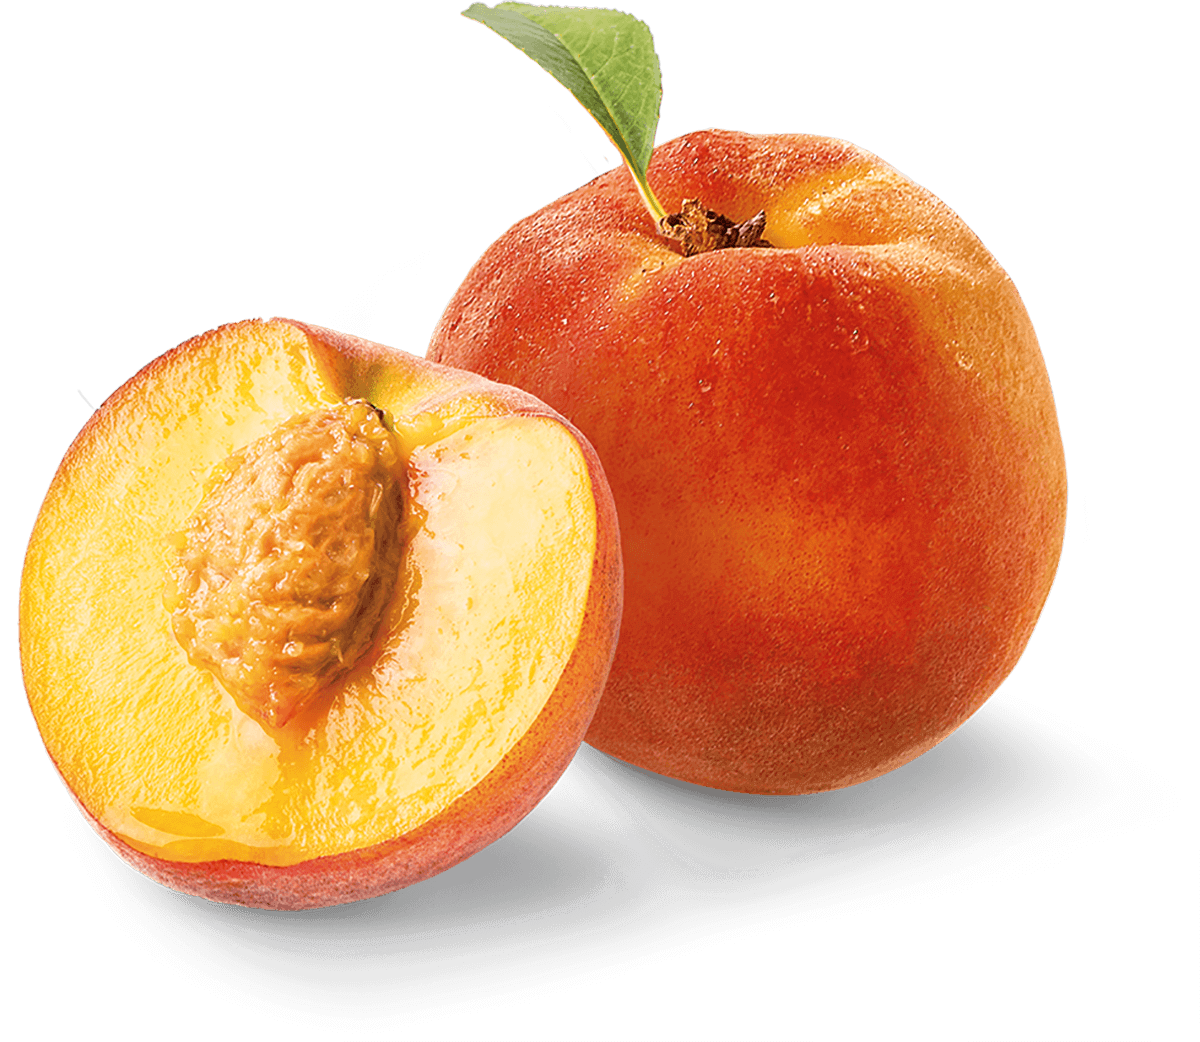 A pair of peaches